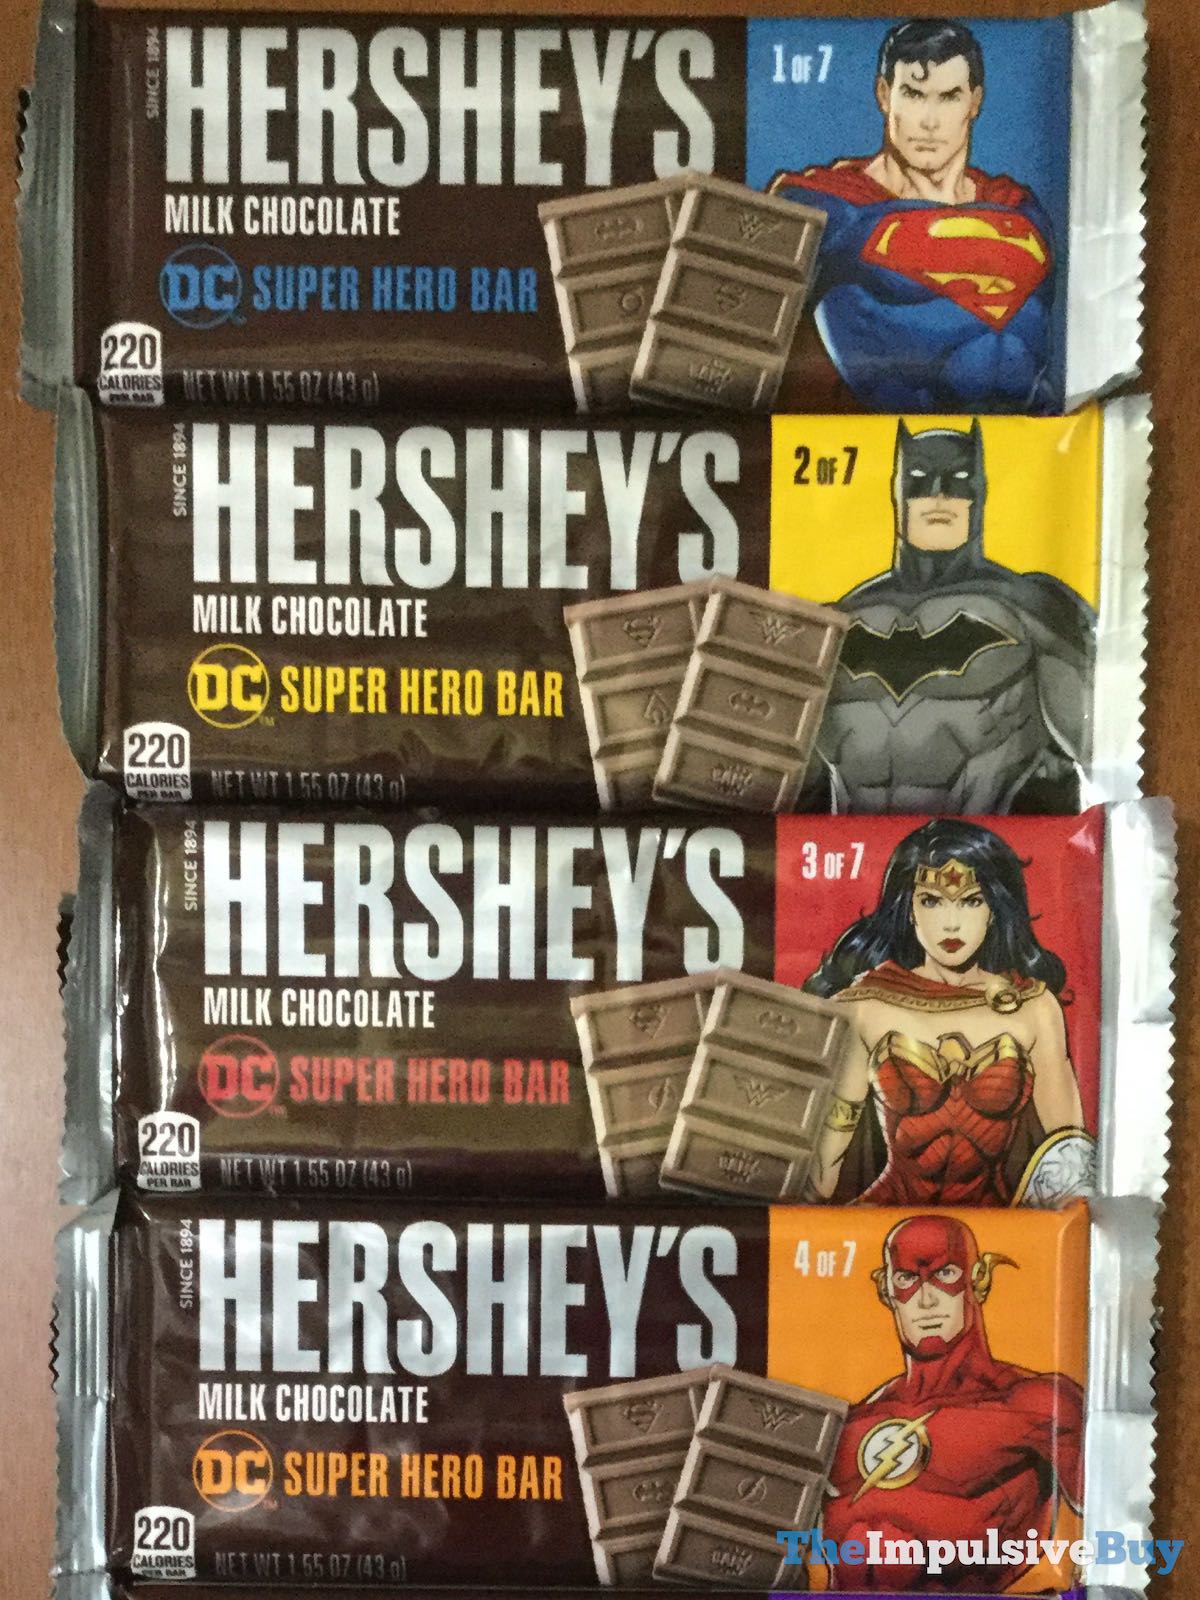 SPOTTED: Hershey's Milk Chocolate DC Super Hero Bars - The Impulsive Buy